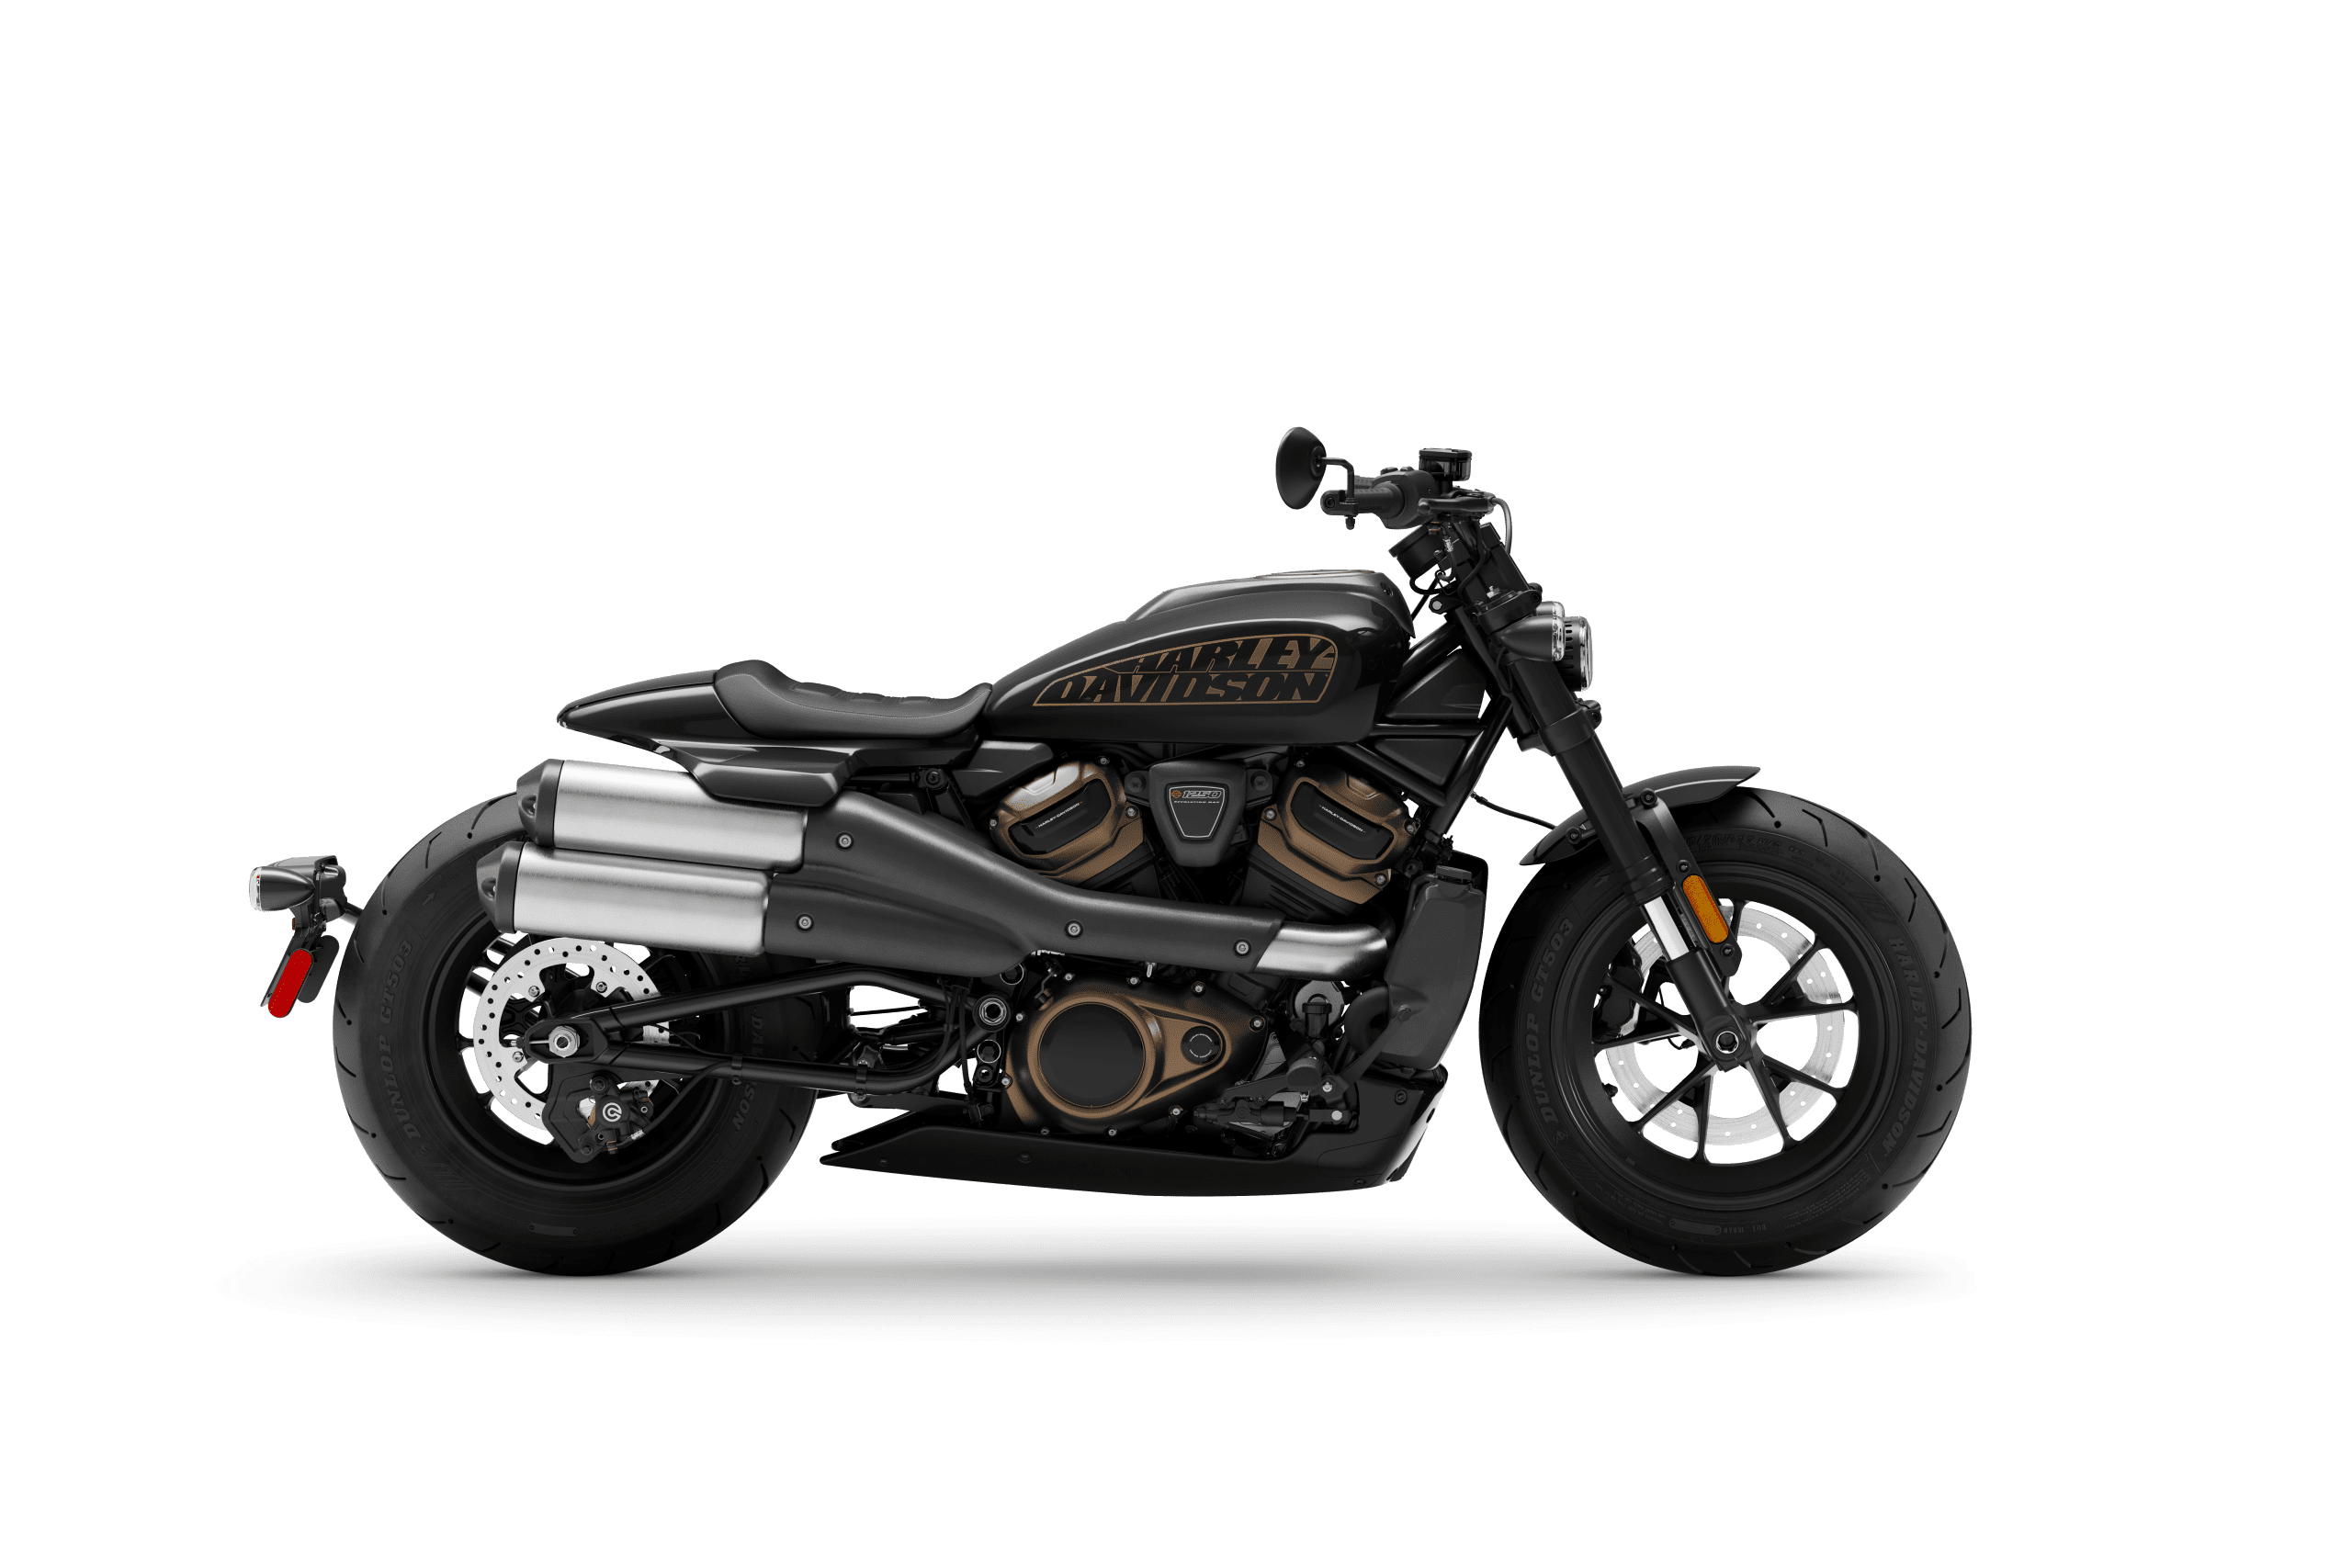 Detail Images Of Harley Davidson Nomer 10